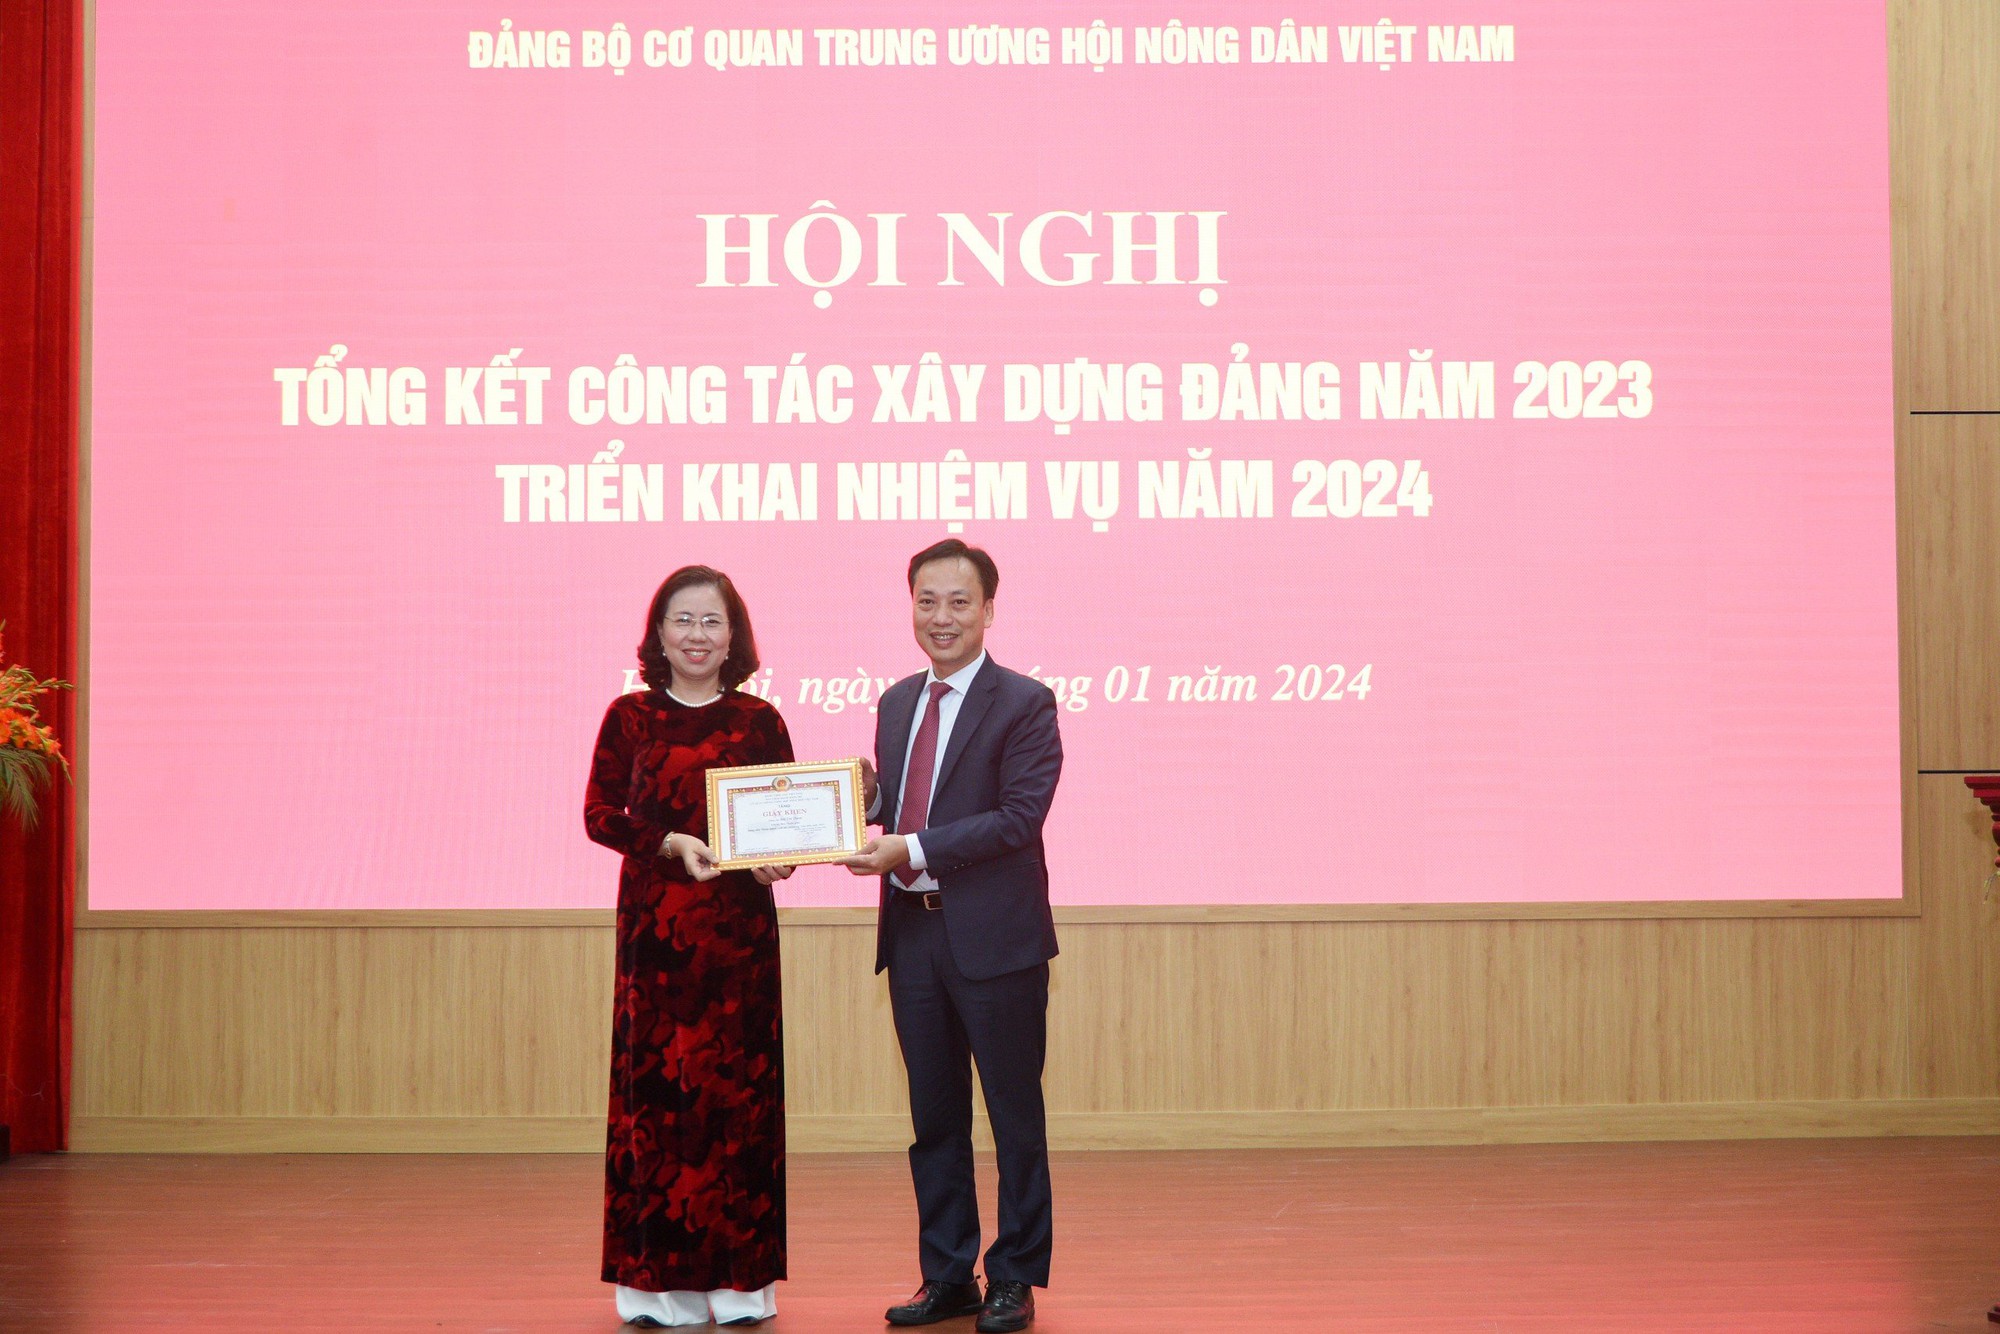 Đảng bộ cơ quan T.Ư Hội Nông dân Việt Nam tổng kết công tác xây dựng Đảng năm 2023, triển khai nhiệm vụ năm 2024- Ảnh 3.